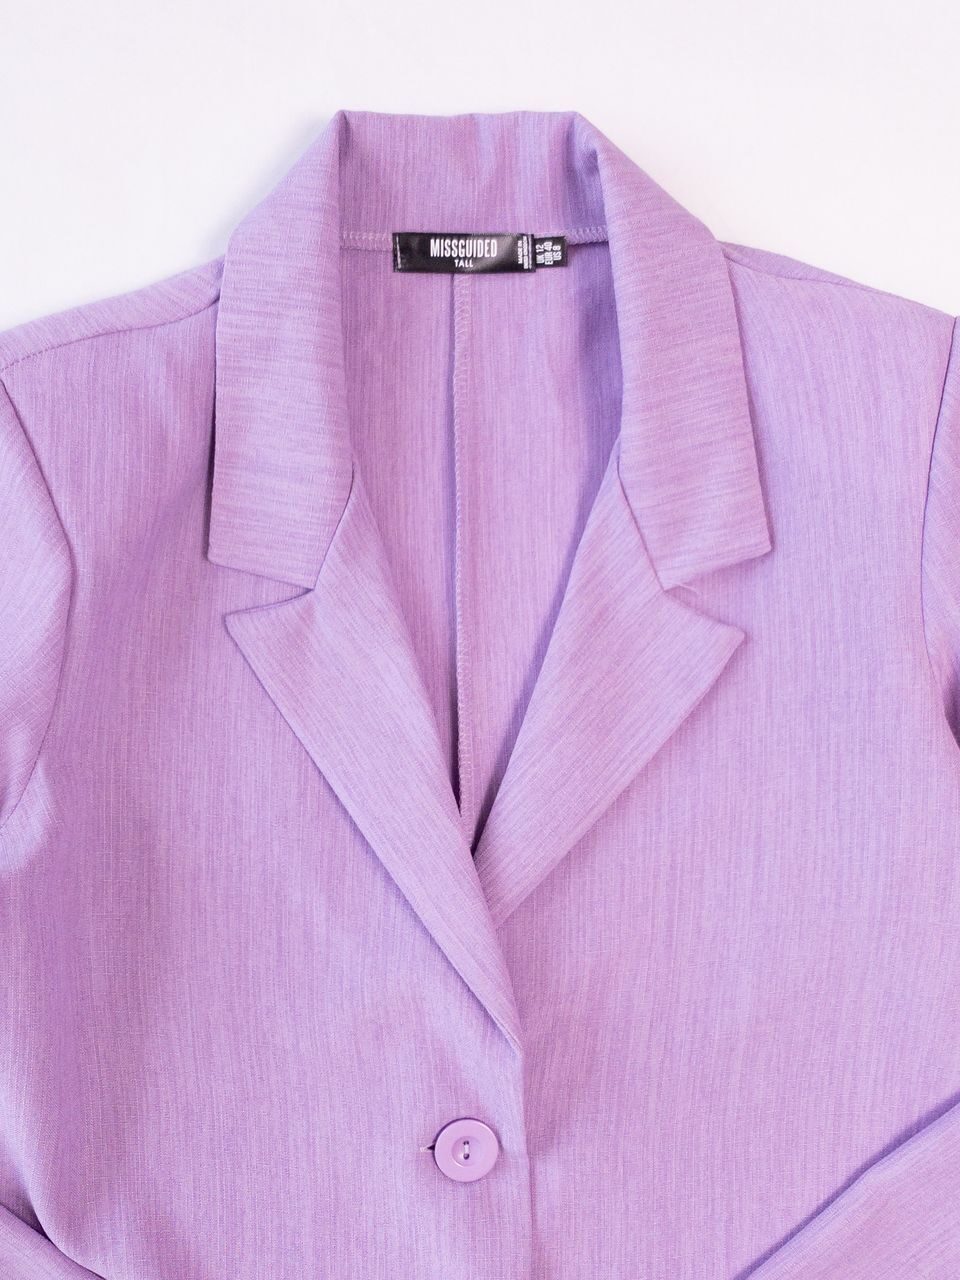 Пиджак легкий без подкладки цвет сиреневый размер EUR 40 (rus 46) MISSGUIDED